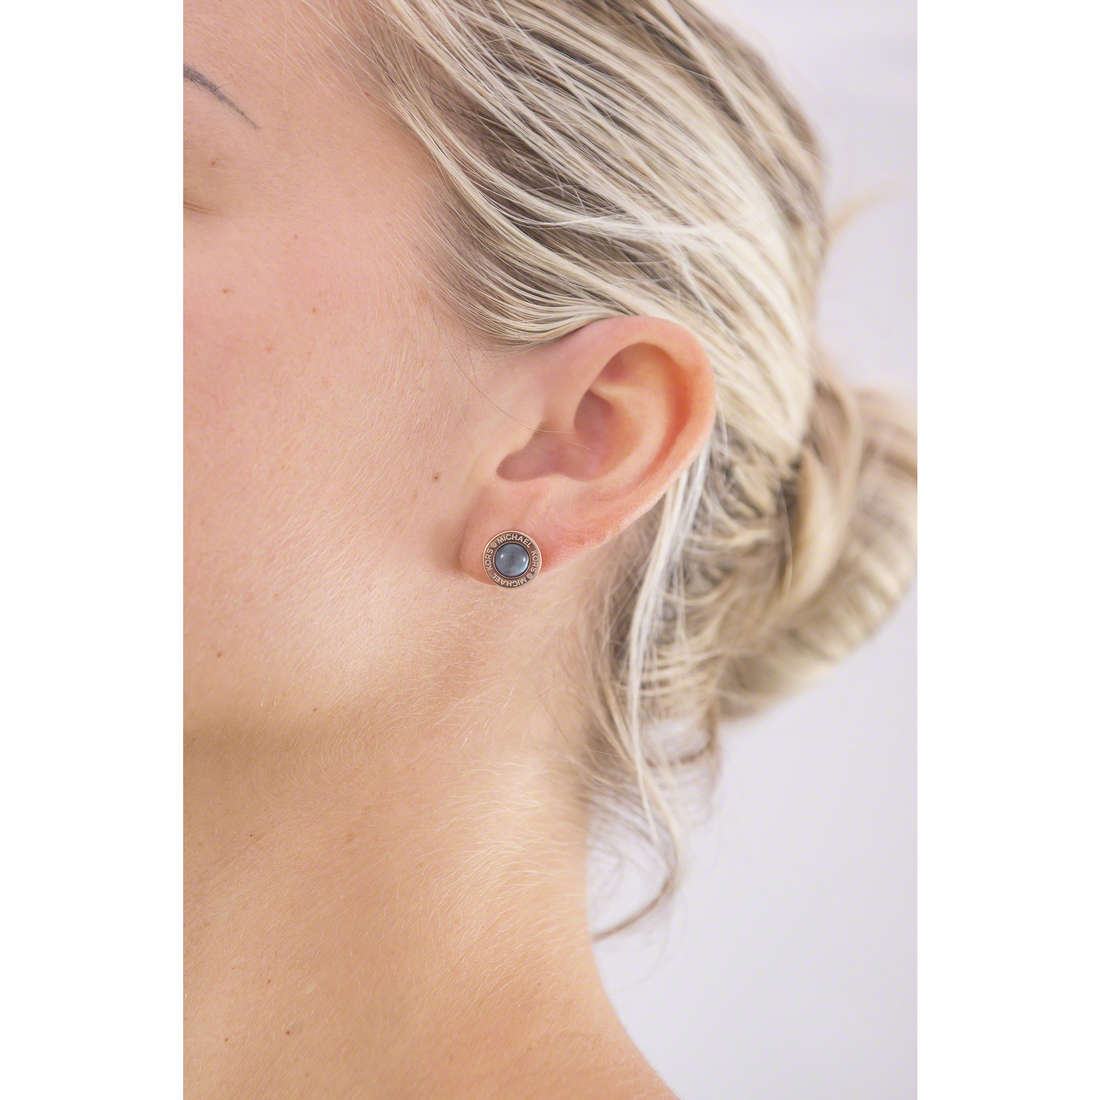 Michael Kors earrings woman MKJ5870791 wearing